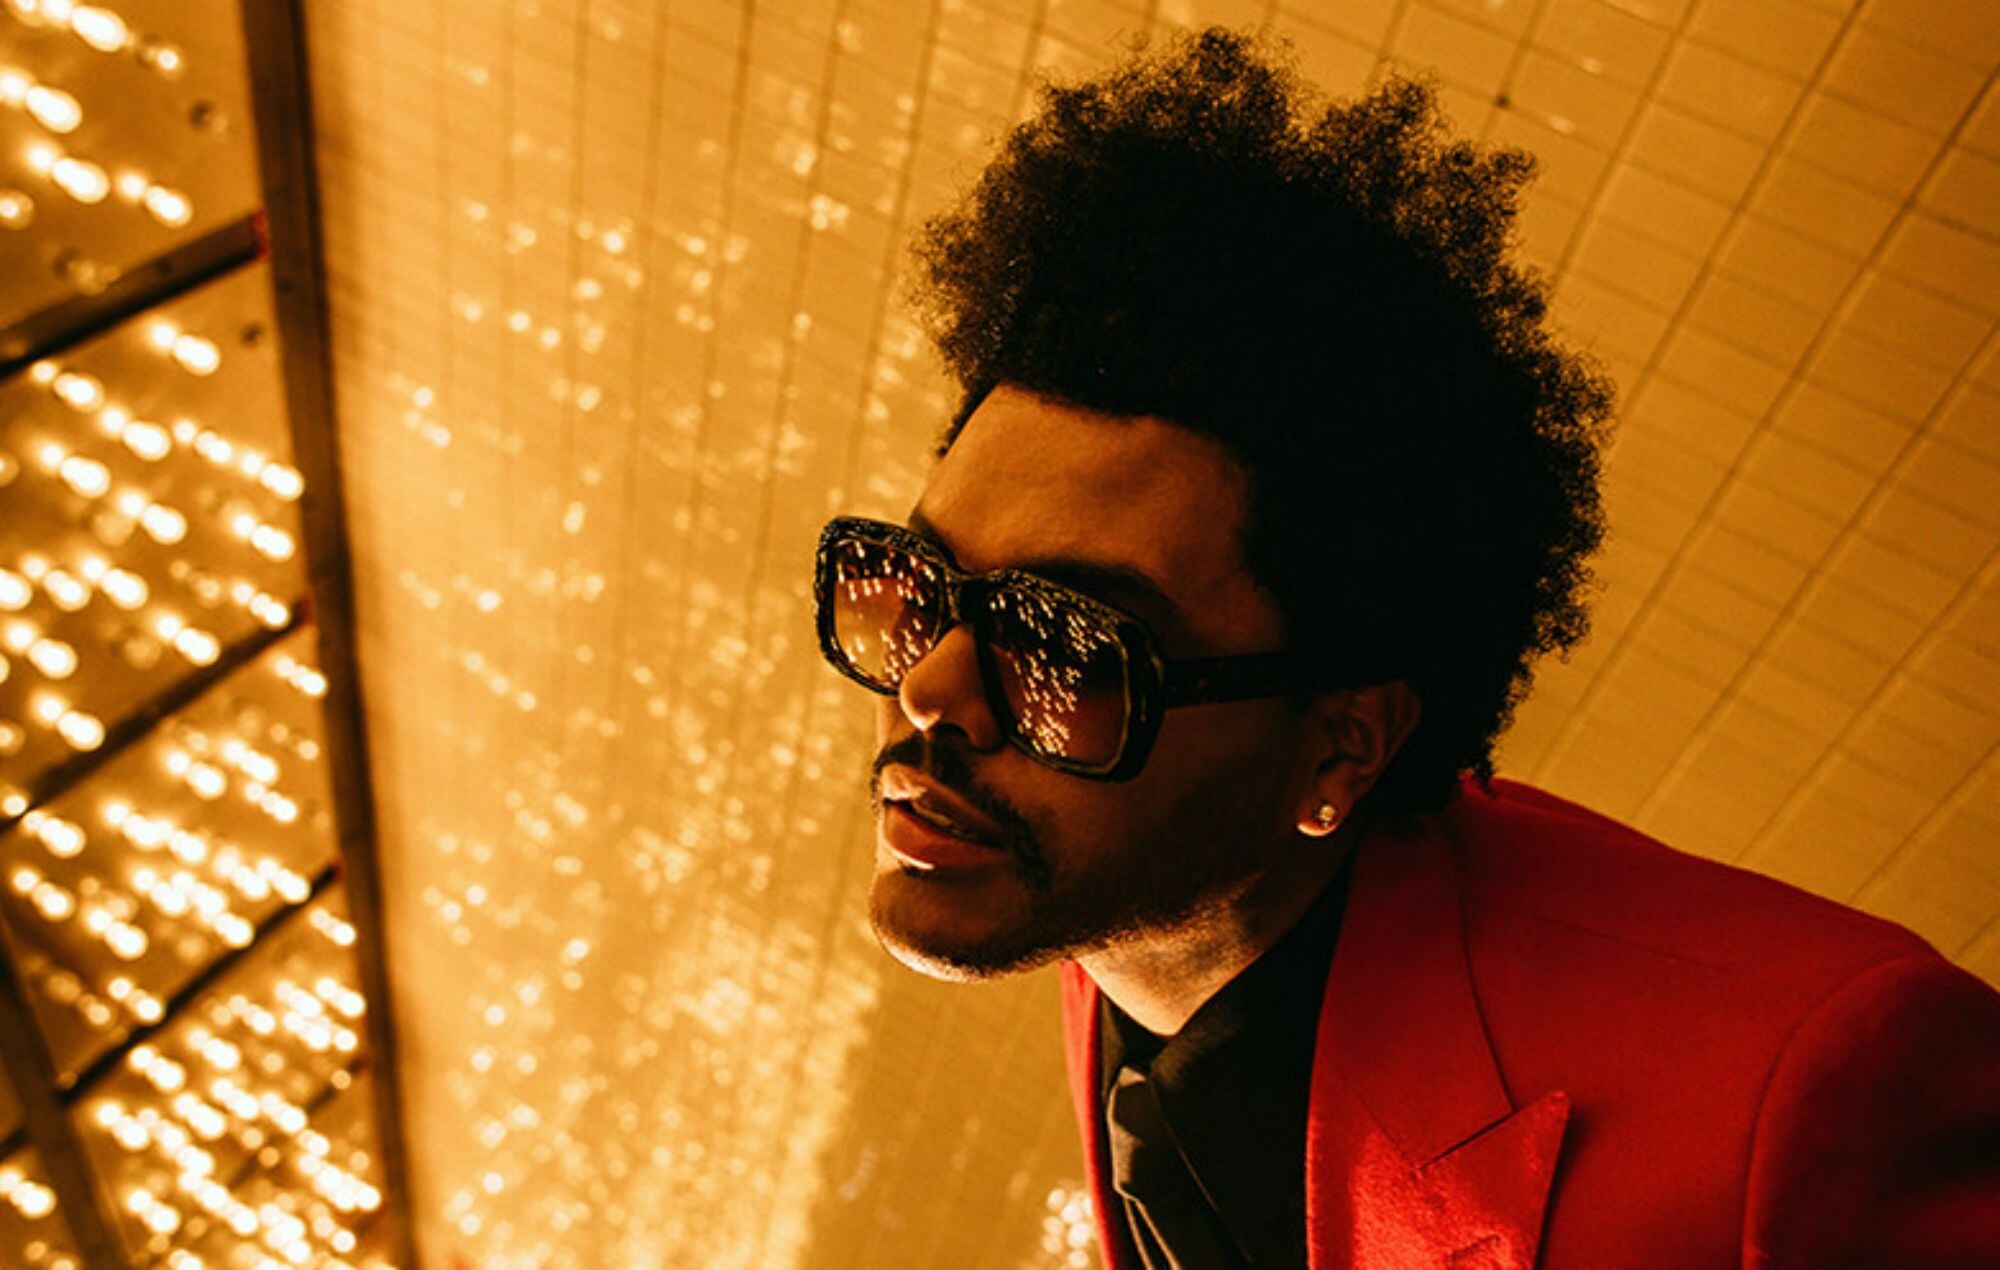 The Weeknd: Starboy, Abel Makkonen Tesfaye, Billboard Hot 100. 2000x1270 HD Wallpaper.